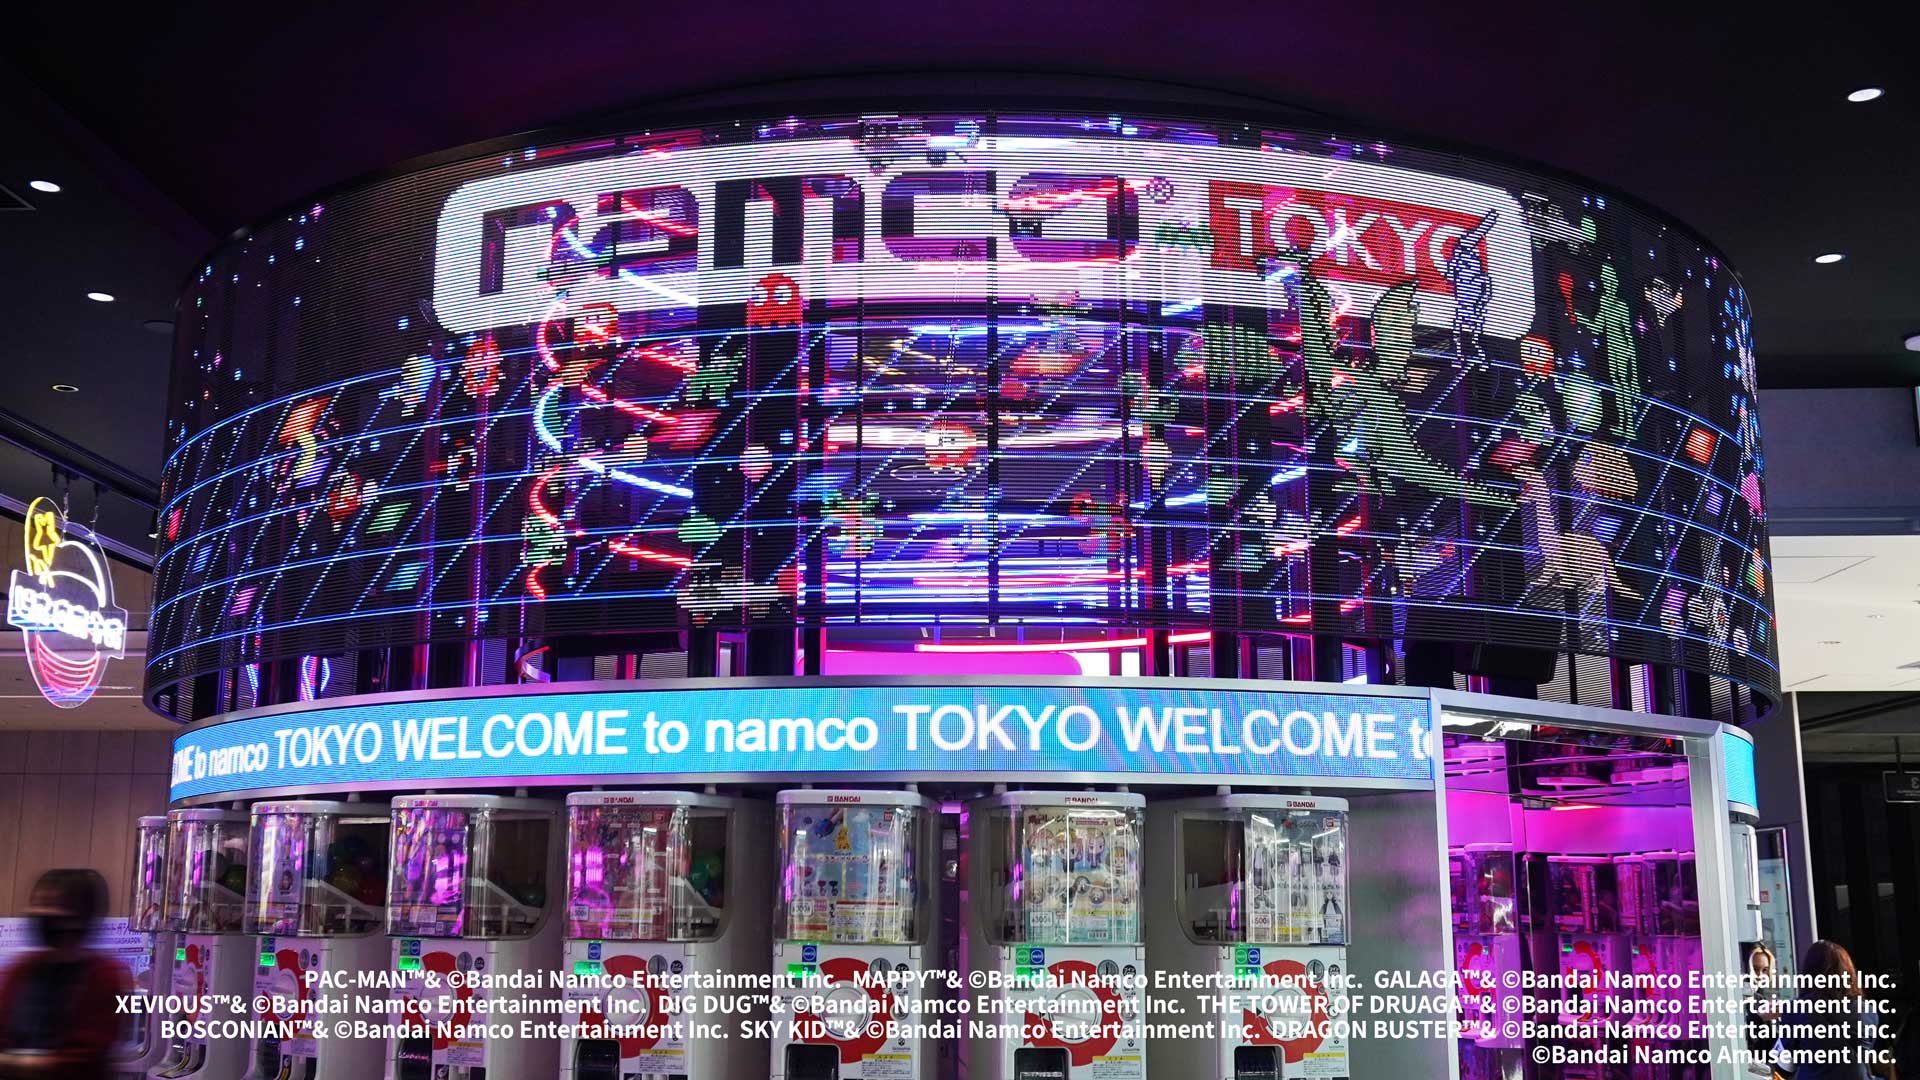 アミューズメントコンプレックス「namco TOKYO」が本日4月14日(金)にグランドオープン。P.I.C.S. TECHがエントランスの映像演出を担当。